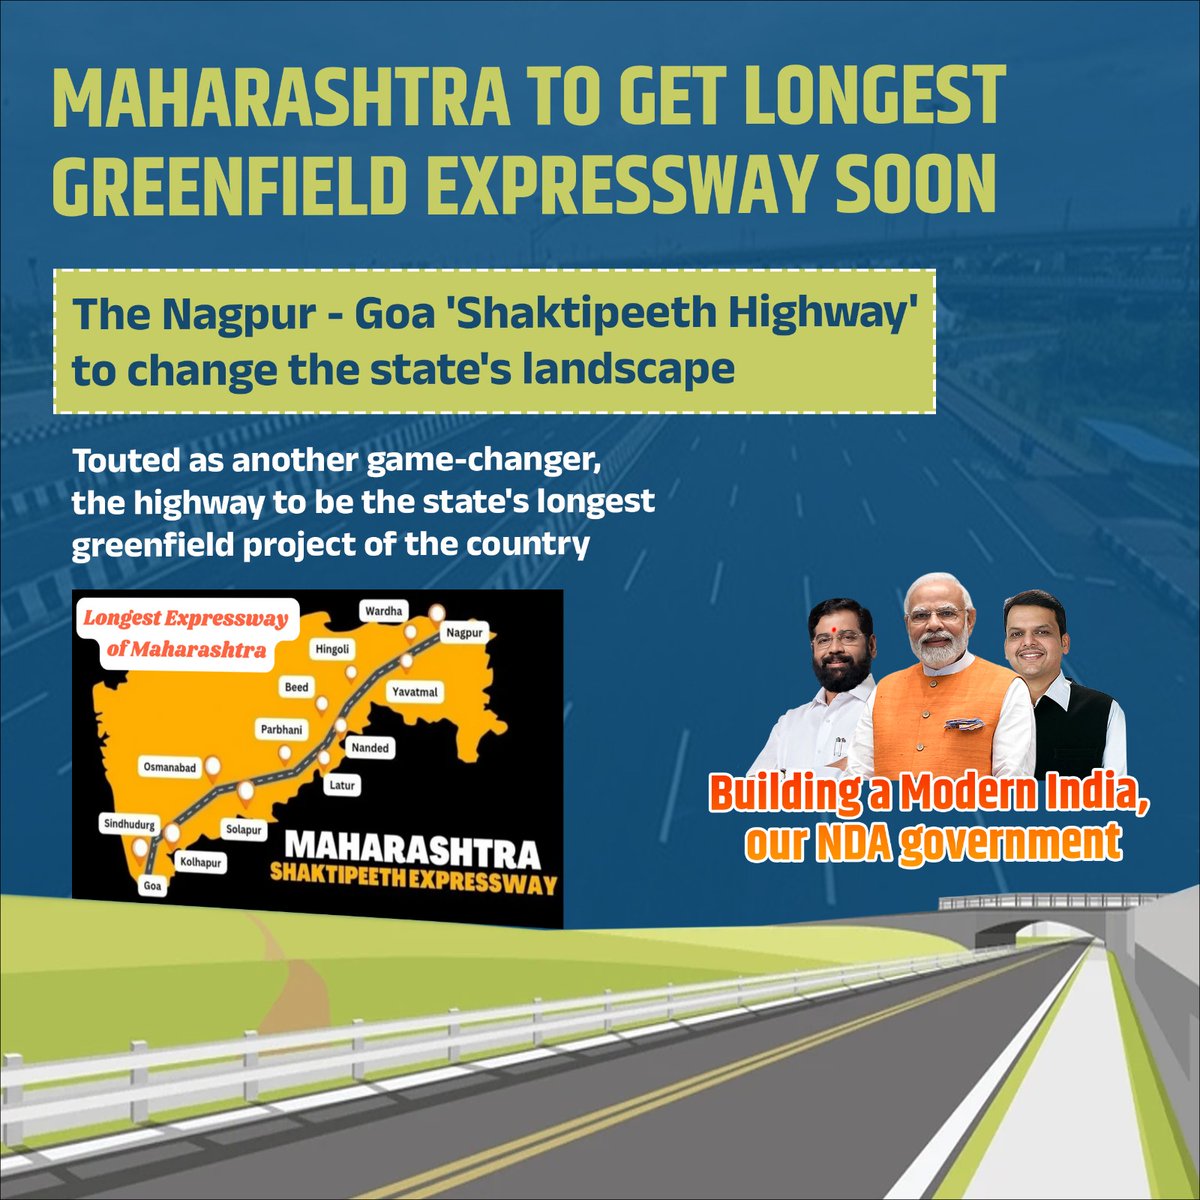 सीएम एकनाथ शिंदे के नेतृत्व में महाराष्ट्र नागपुर-गोवा 'शक्तिपीठ राजमार्ग' के साथ एक परिवर्तनकारी बदलाव देखने के लिए तैयार है। यह महत्वाकांक्षी परियोजना न केवल बेहतर कनेक्टिविटी का वादा करती है, बल्कि पर्यावरण के अनुकूल बुनियादी ढांचे के विकास पर सरकार के फोकस को भी रेखांकित करती…